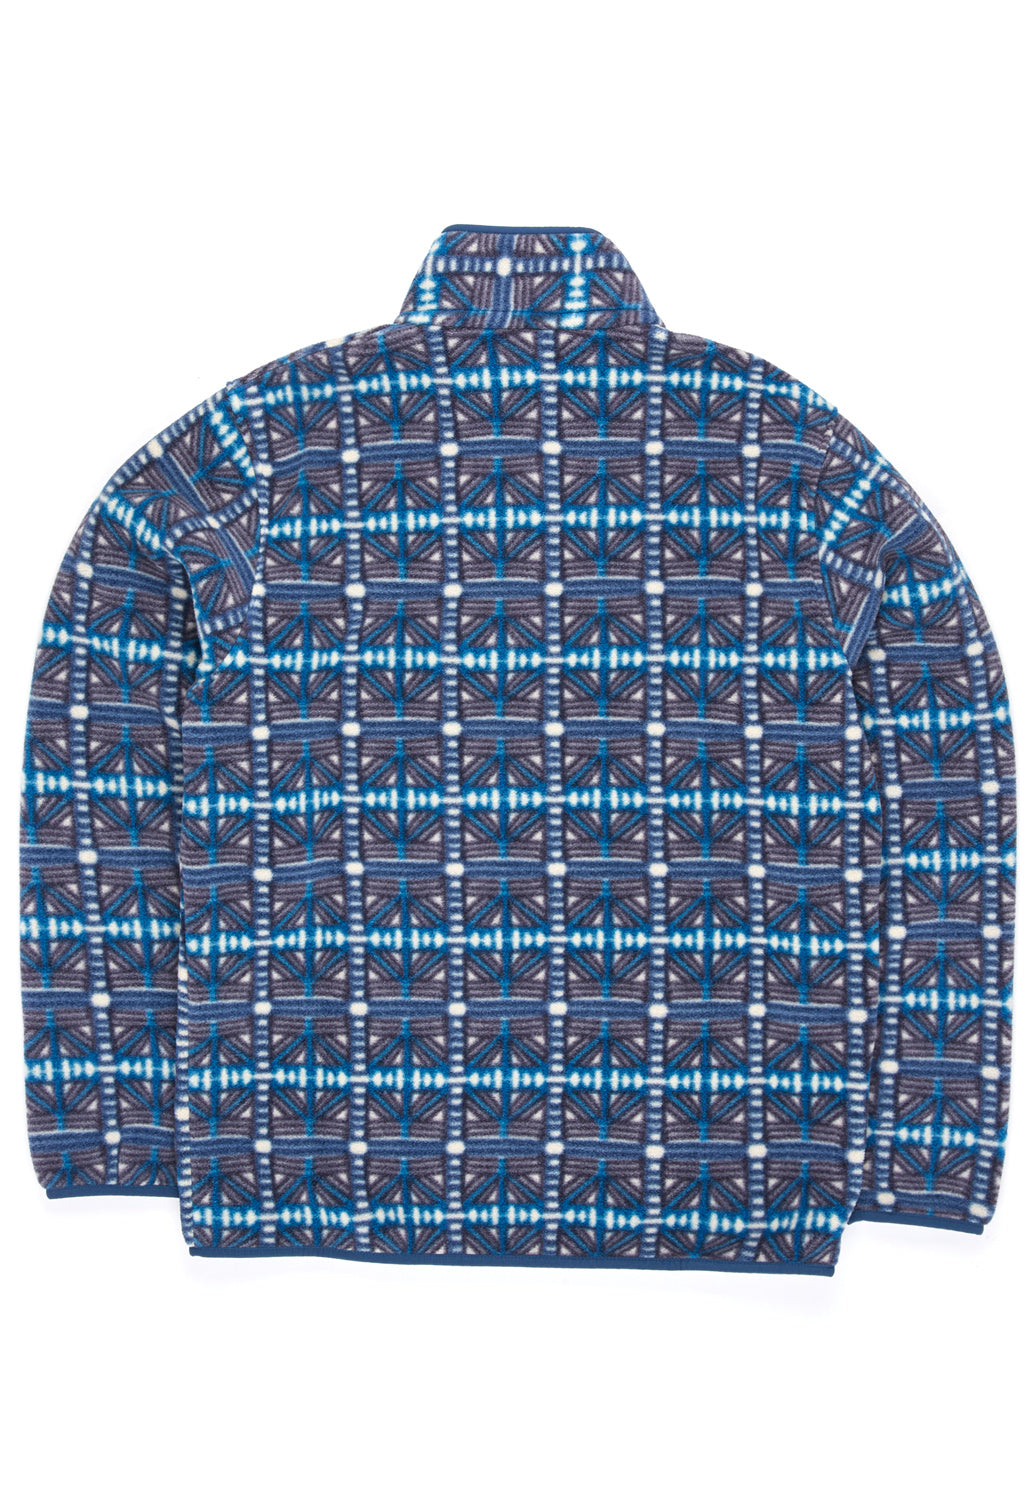 Patagonia Men's Synchilla Jacket